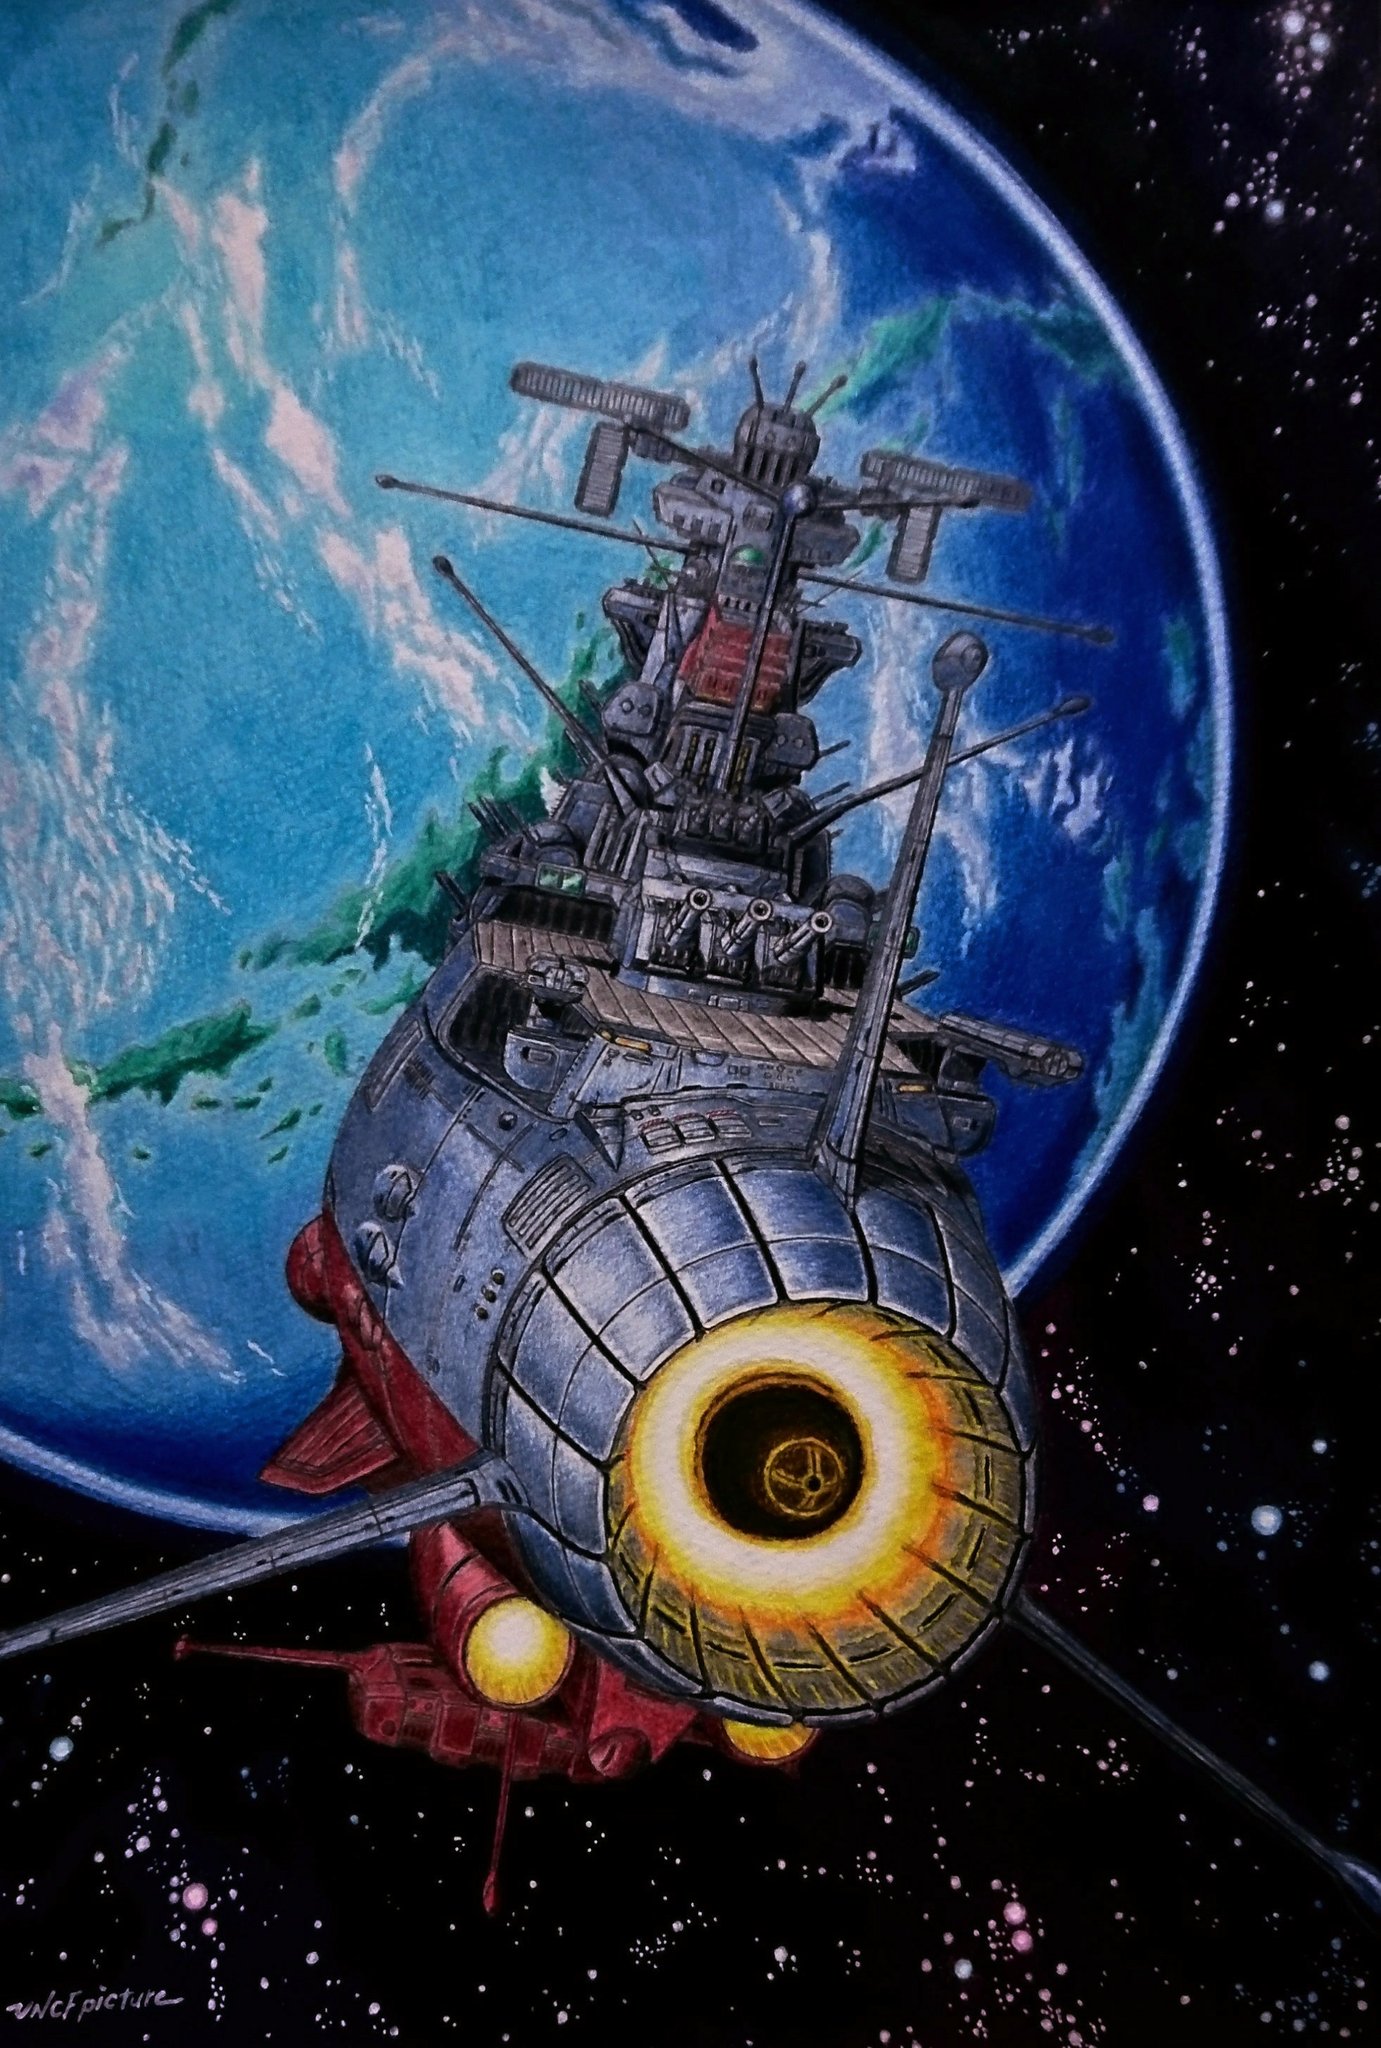 国連宇宙軍 三等宙尉 遥かなる約束の地 16万8000光年の彼方 イスカンダルに辿り着いたヤマトを描きました 宇宙戦艦ヤマト2199 Yamato2199 三等宙尉のイラスト 色鉛筆 T Co Igayosaeyl Twitter